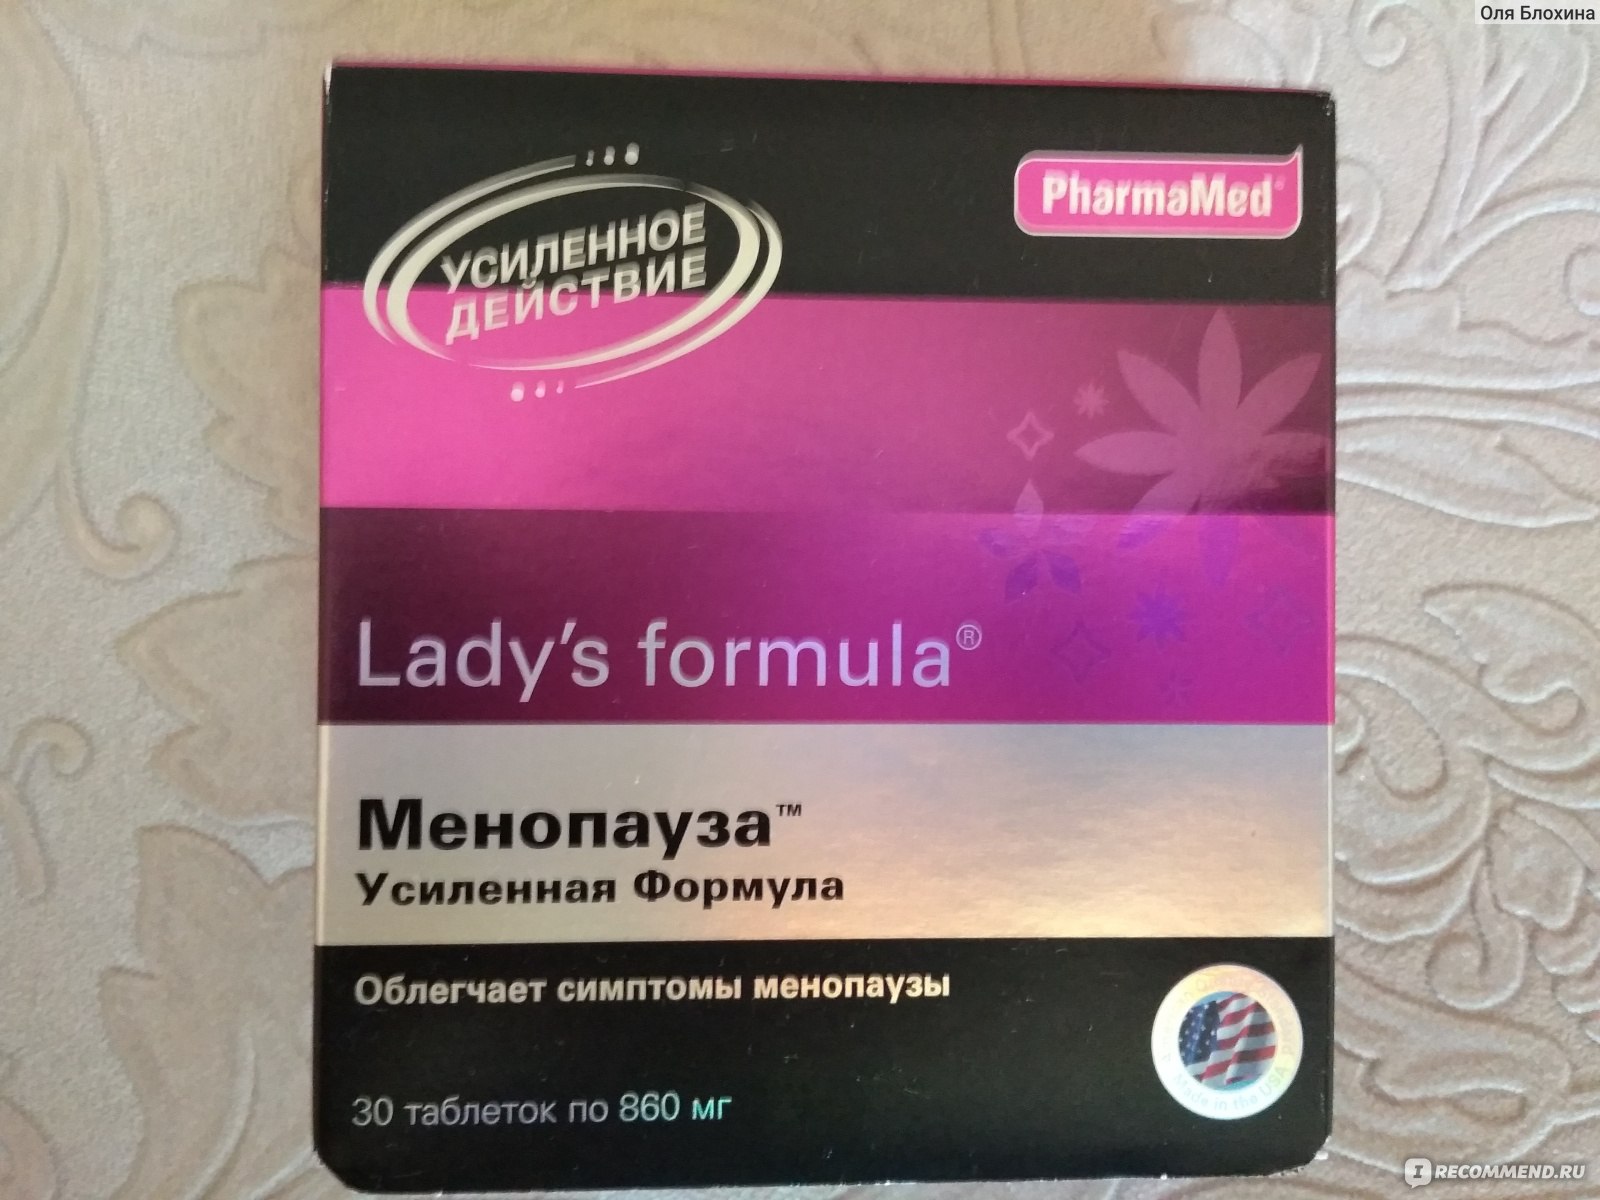 Ледис формула менопауза купить в аптеке. Lady`s Formula менопауза. Ледис формула менопауза усиленная. Lady's Formula менопауза усиленная формула. Ледис формула менопауза усиленная состав.